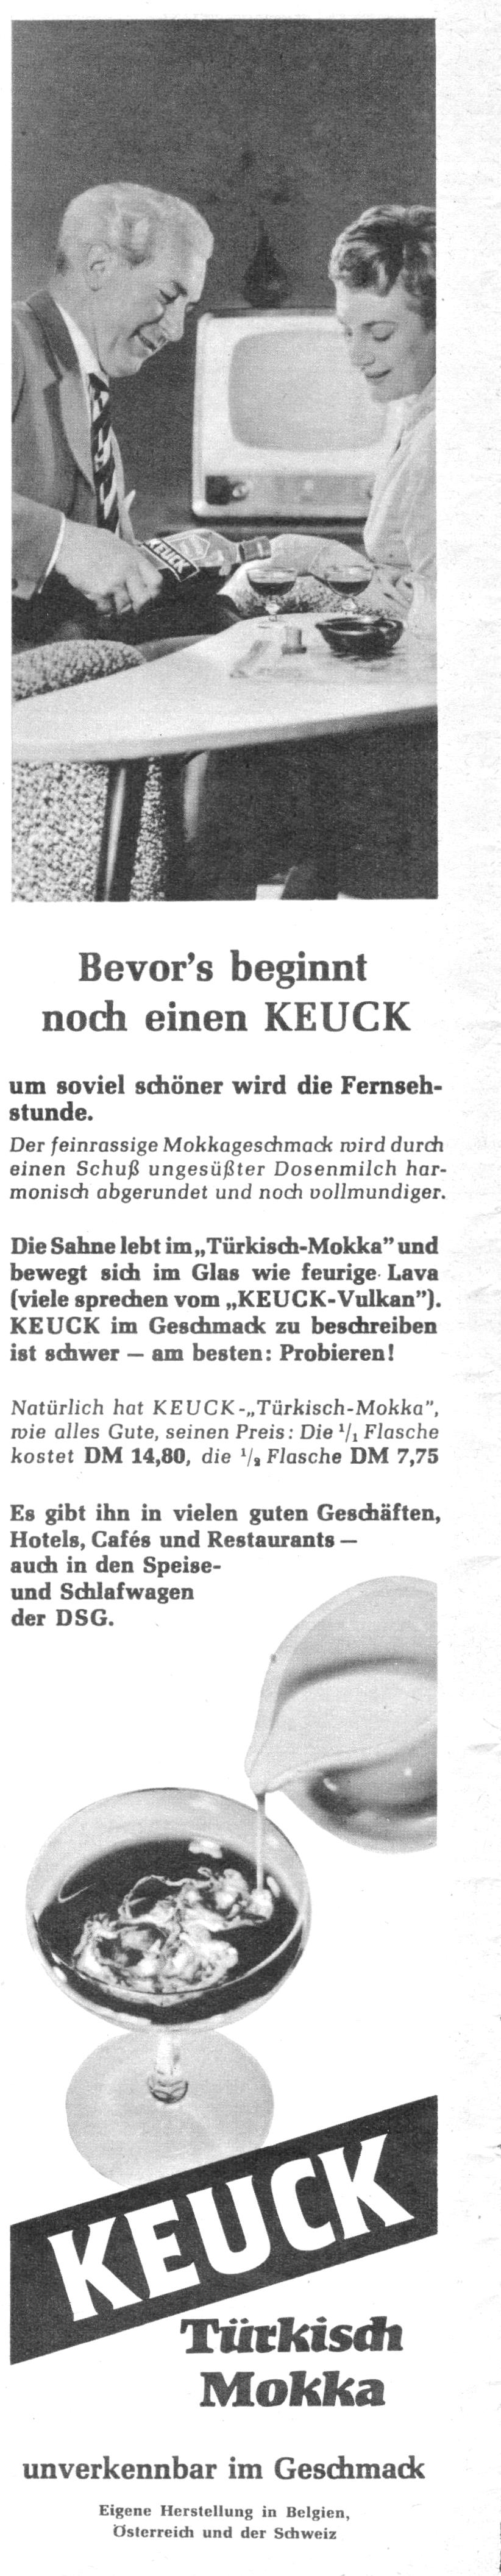 Keuck 1959 167.jpg